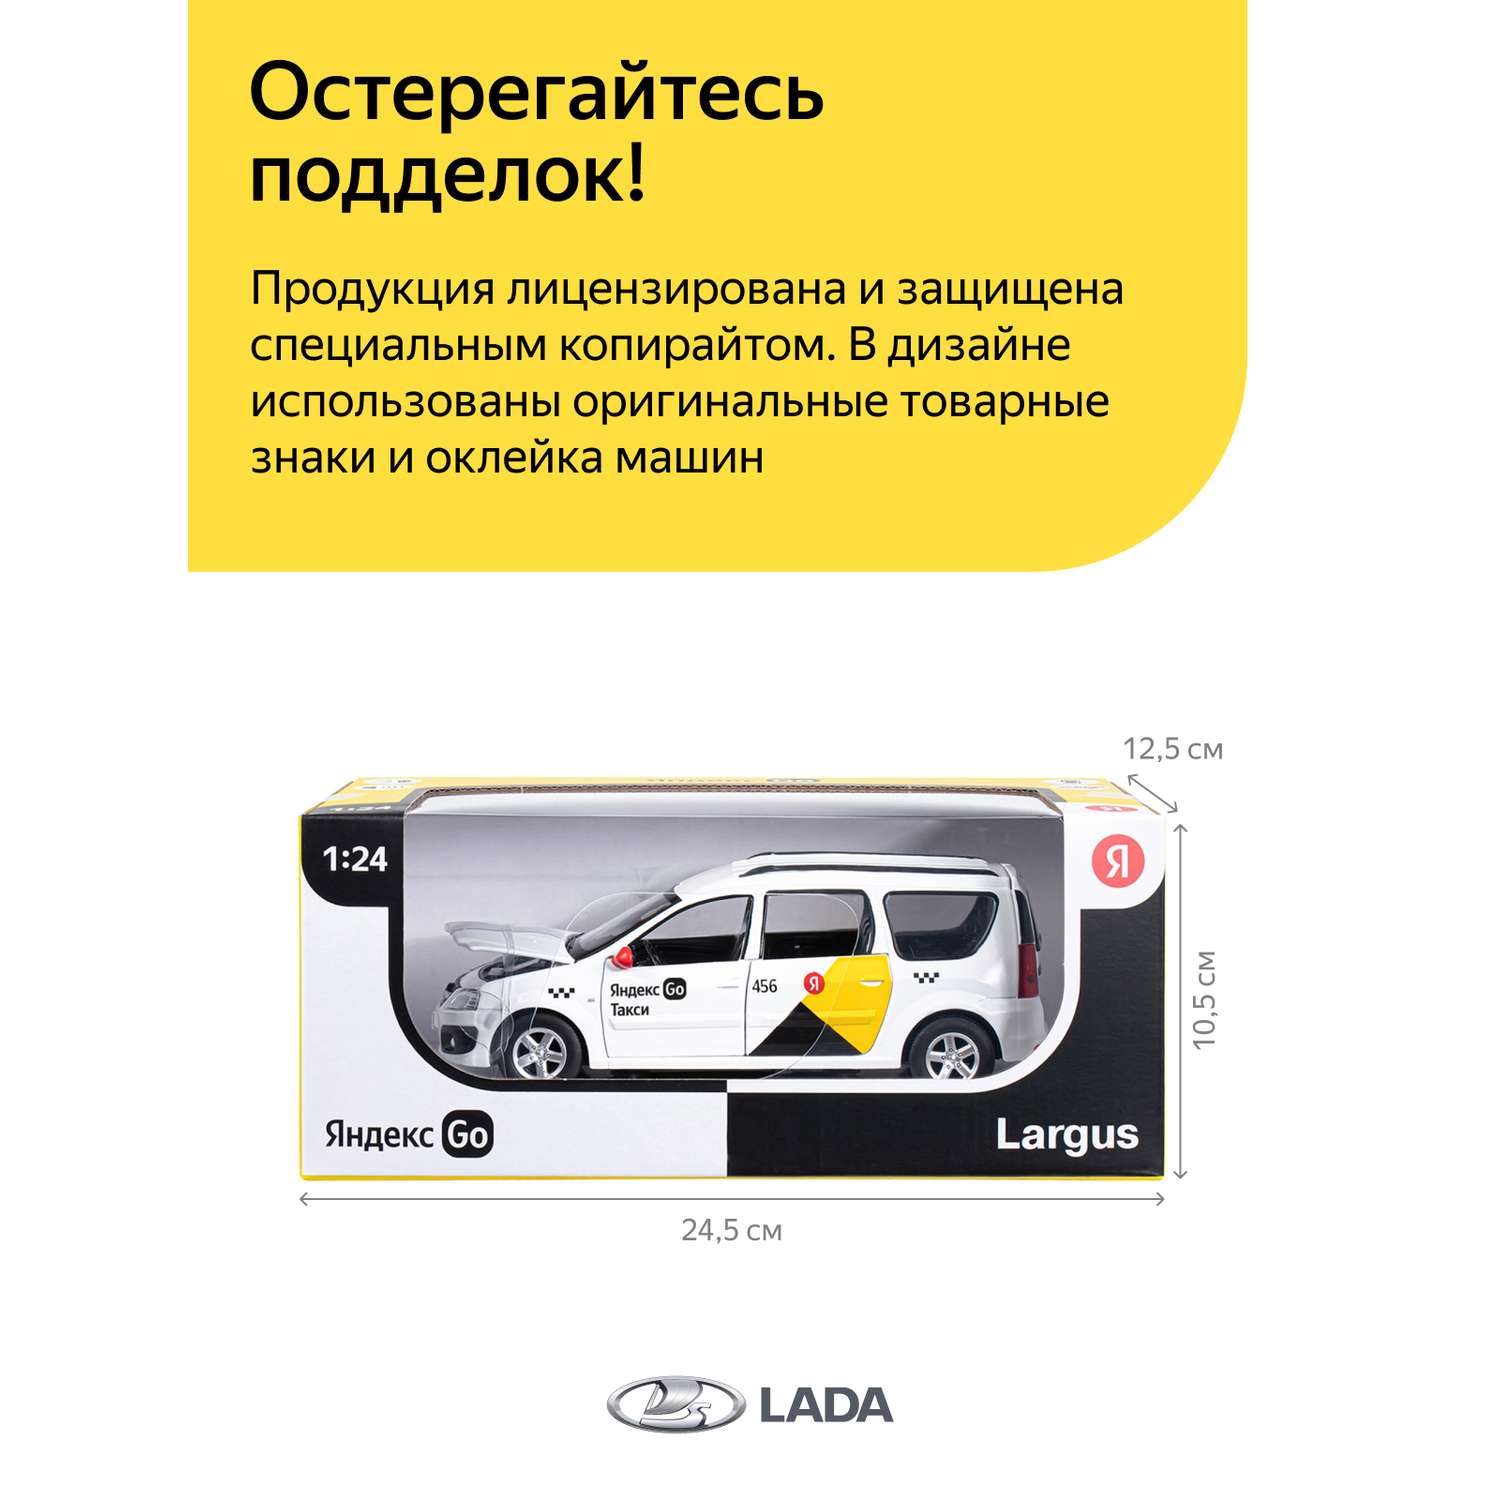 Машинка металлическая Яндекс GO игрушка детская LADA LARGUS 1:24 белый Озвучено Алисой JB1251343/Яндекс GO - фото 4